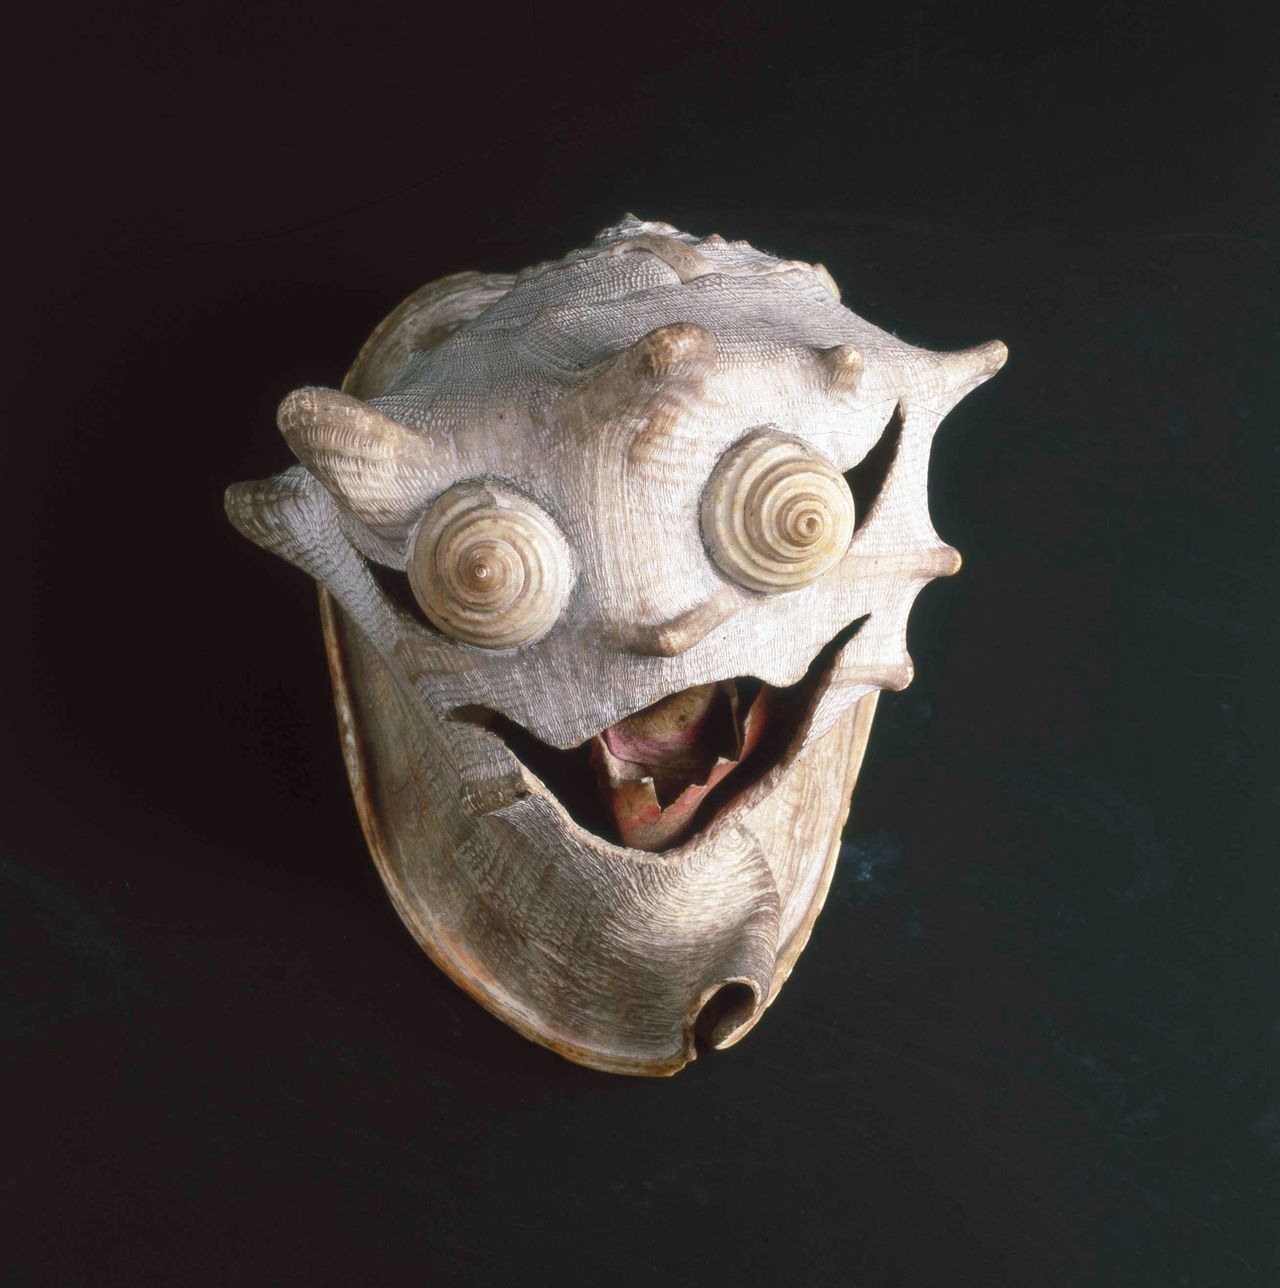 Pascal-Desir Maisoneuve, Le diable (The Devil), c. 1927-1928, Bordeaux, France, shells, Collection de l'Art Brut, Lausanne, Switzerland